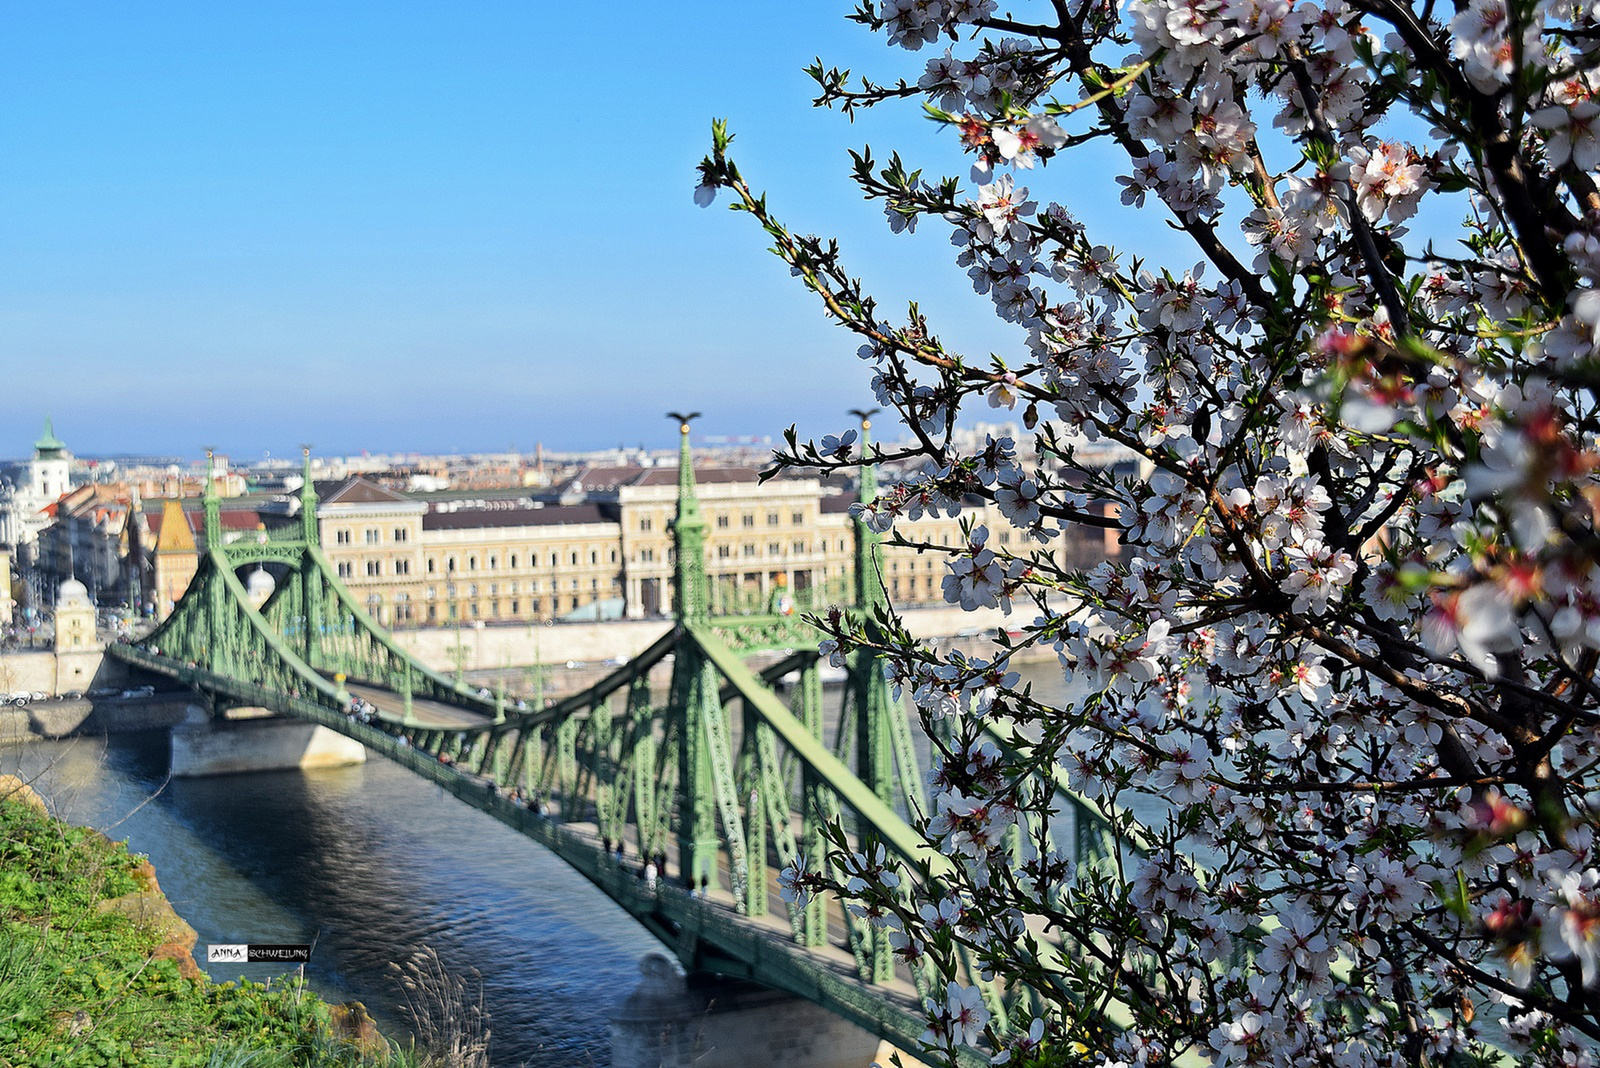 Tavaszi Szabadság híd...